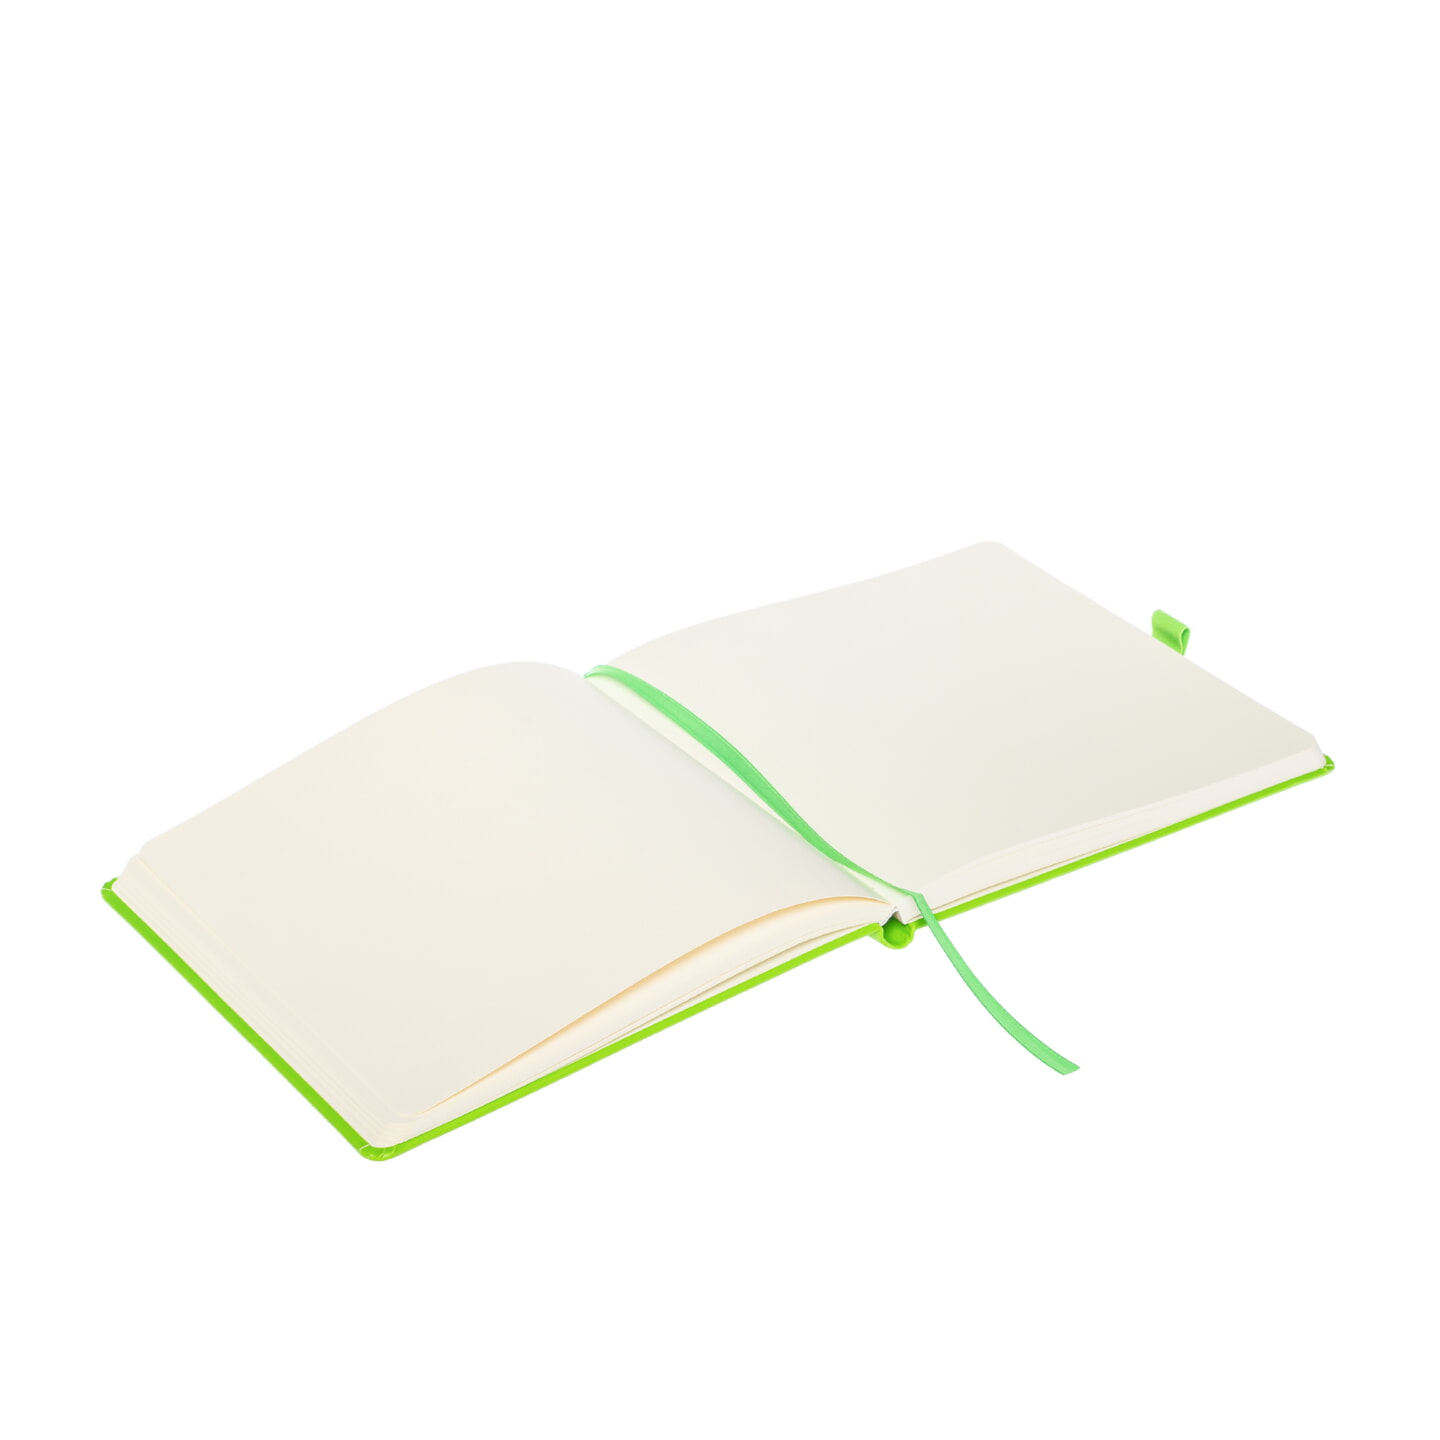 Блокнот для зарисовок Sketchmarker 140г/кв.м 20*20cм 80л твердая обложка Зеленый Луг